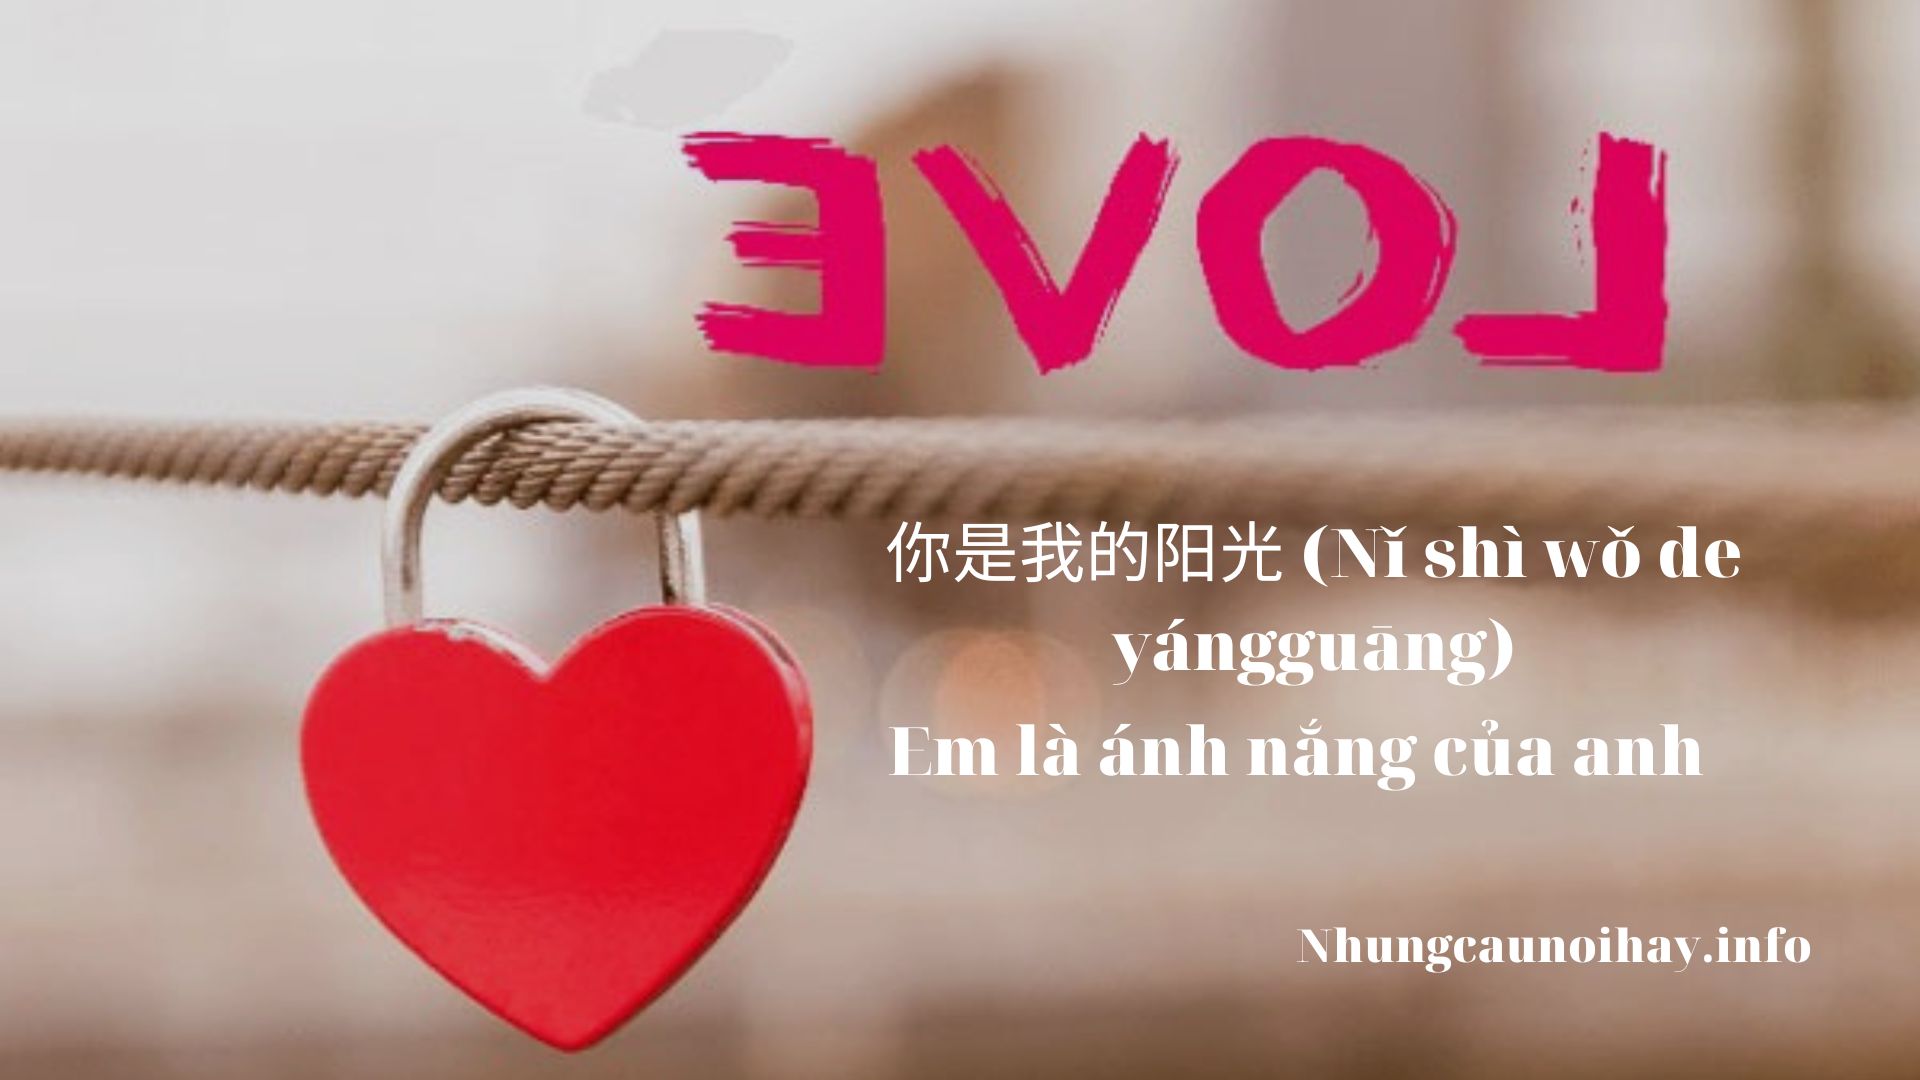 STT tiếng Trung về sự mệt mỏi trong tình yêu